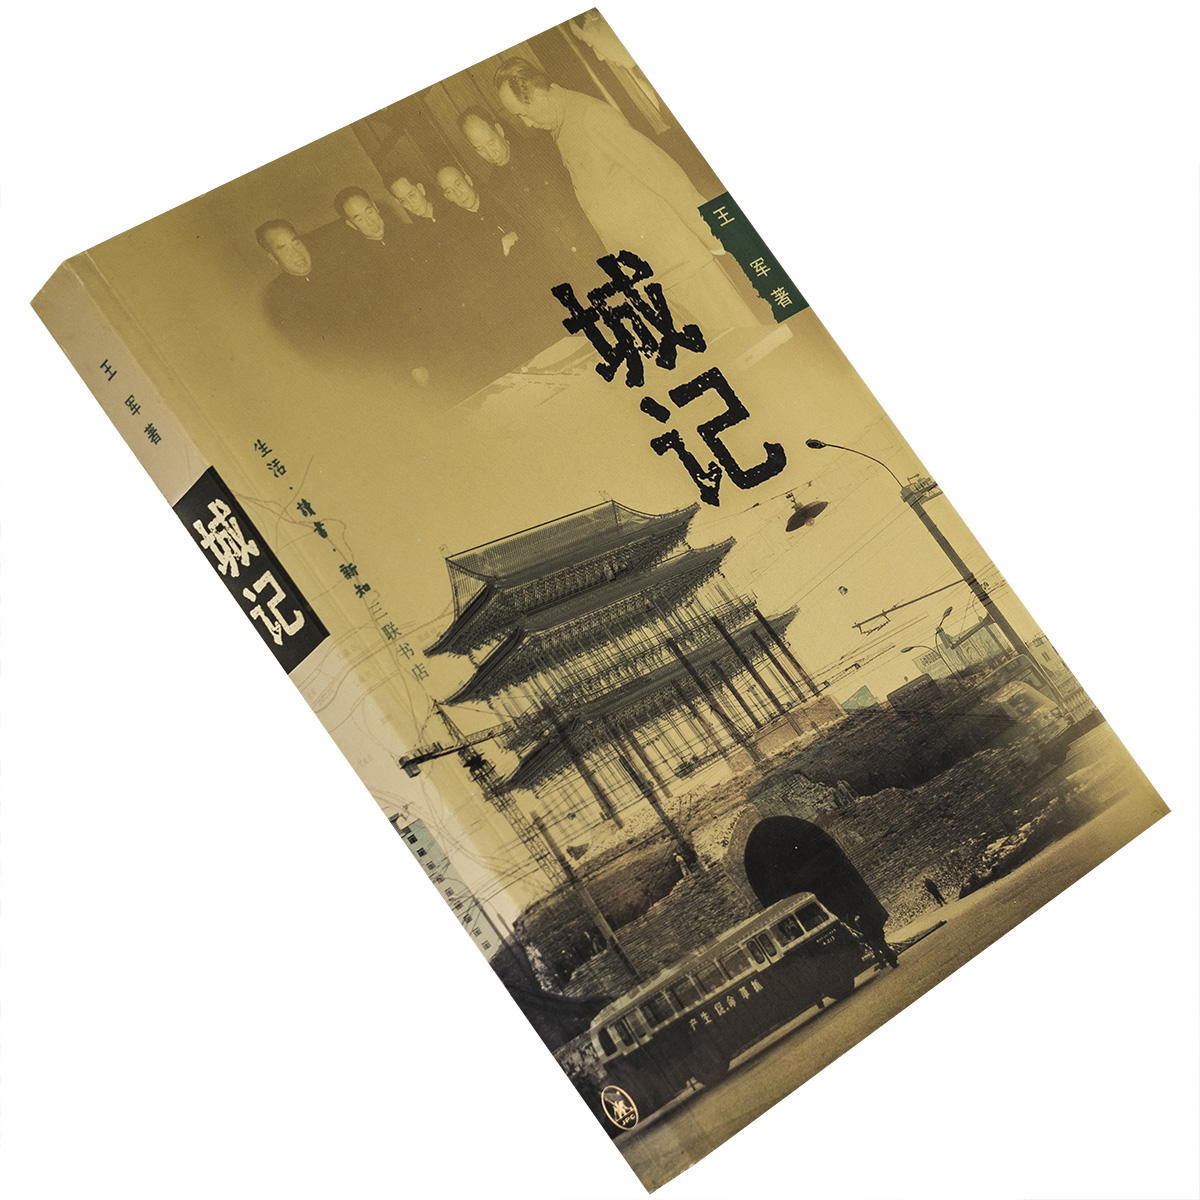 城记 王军 北京 城记 中国城市发展三部曲 三联书店 正版书籍 老版